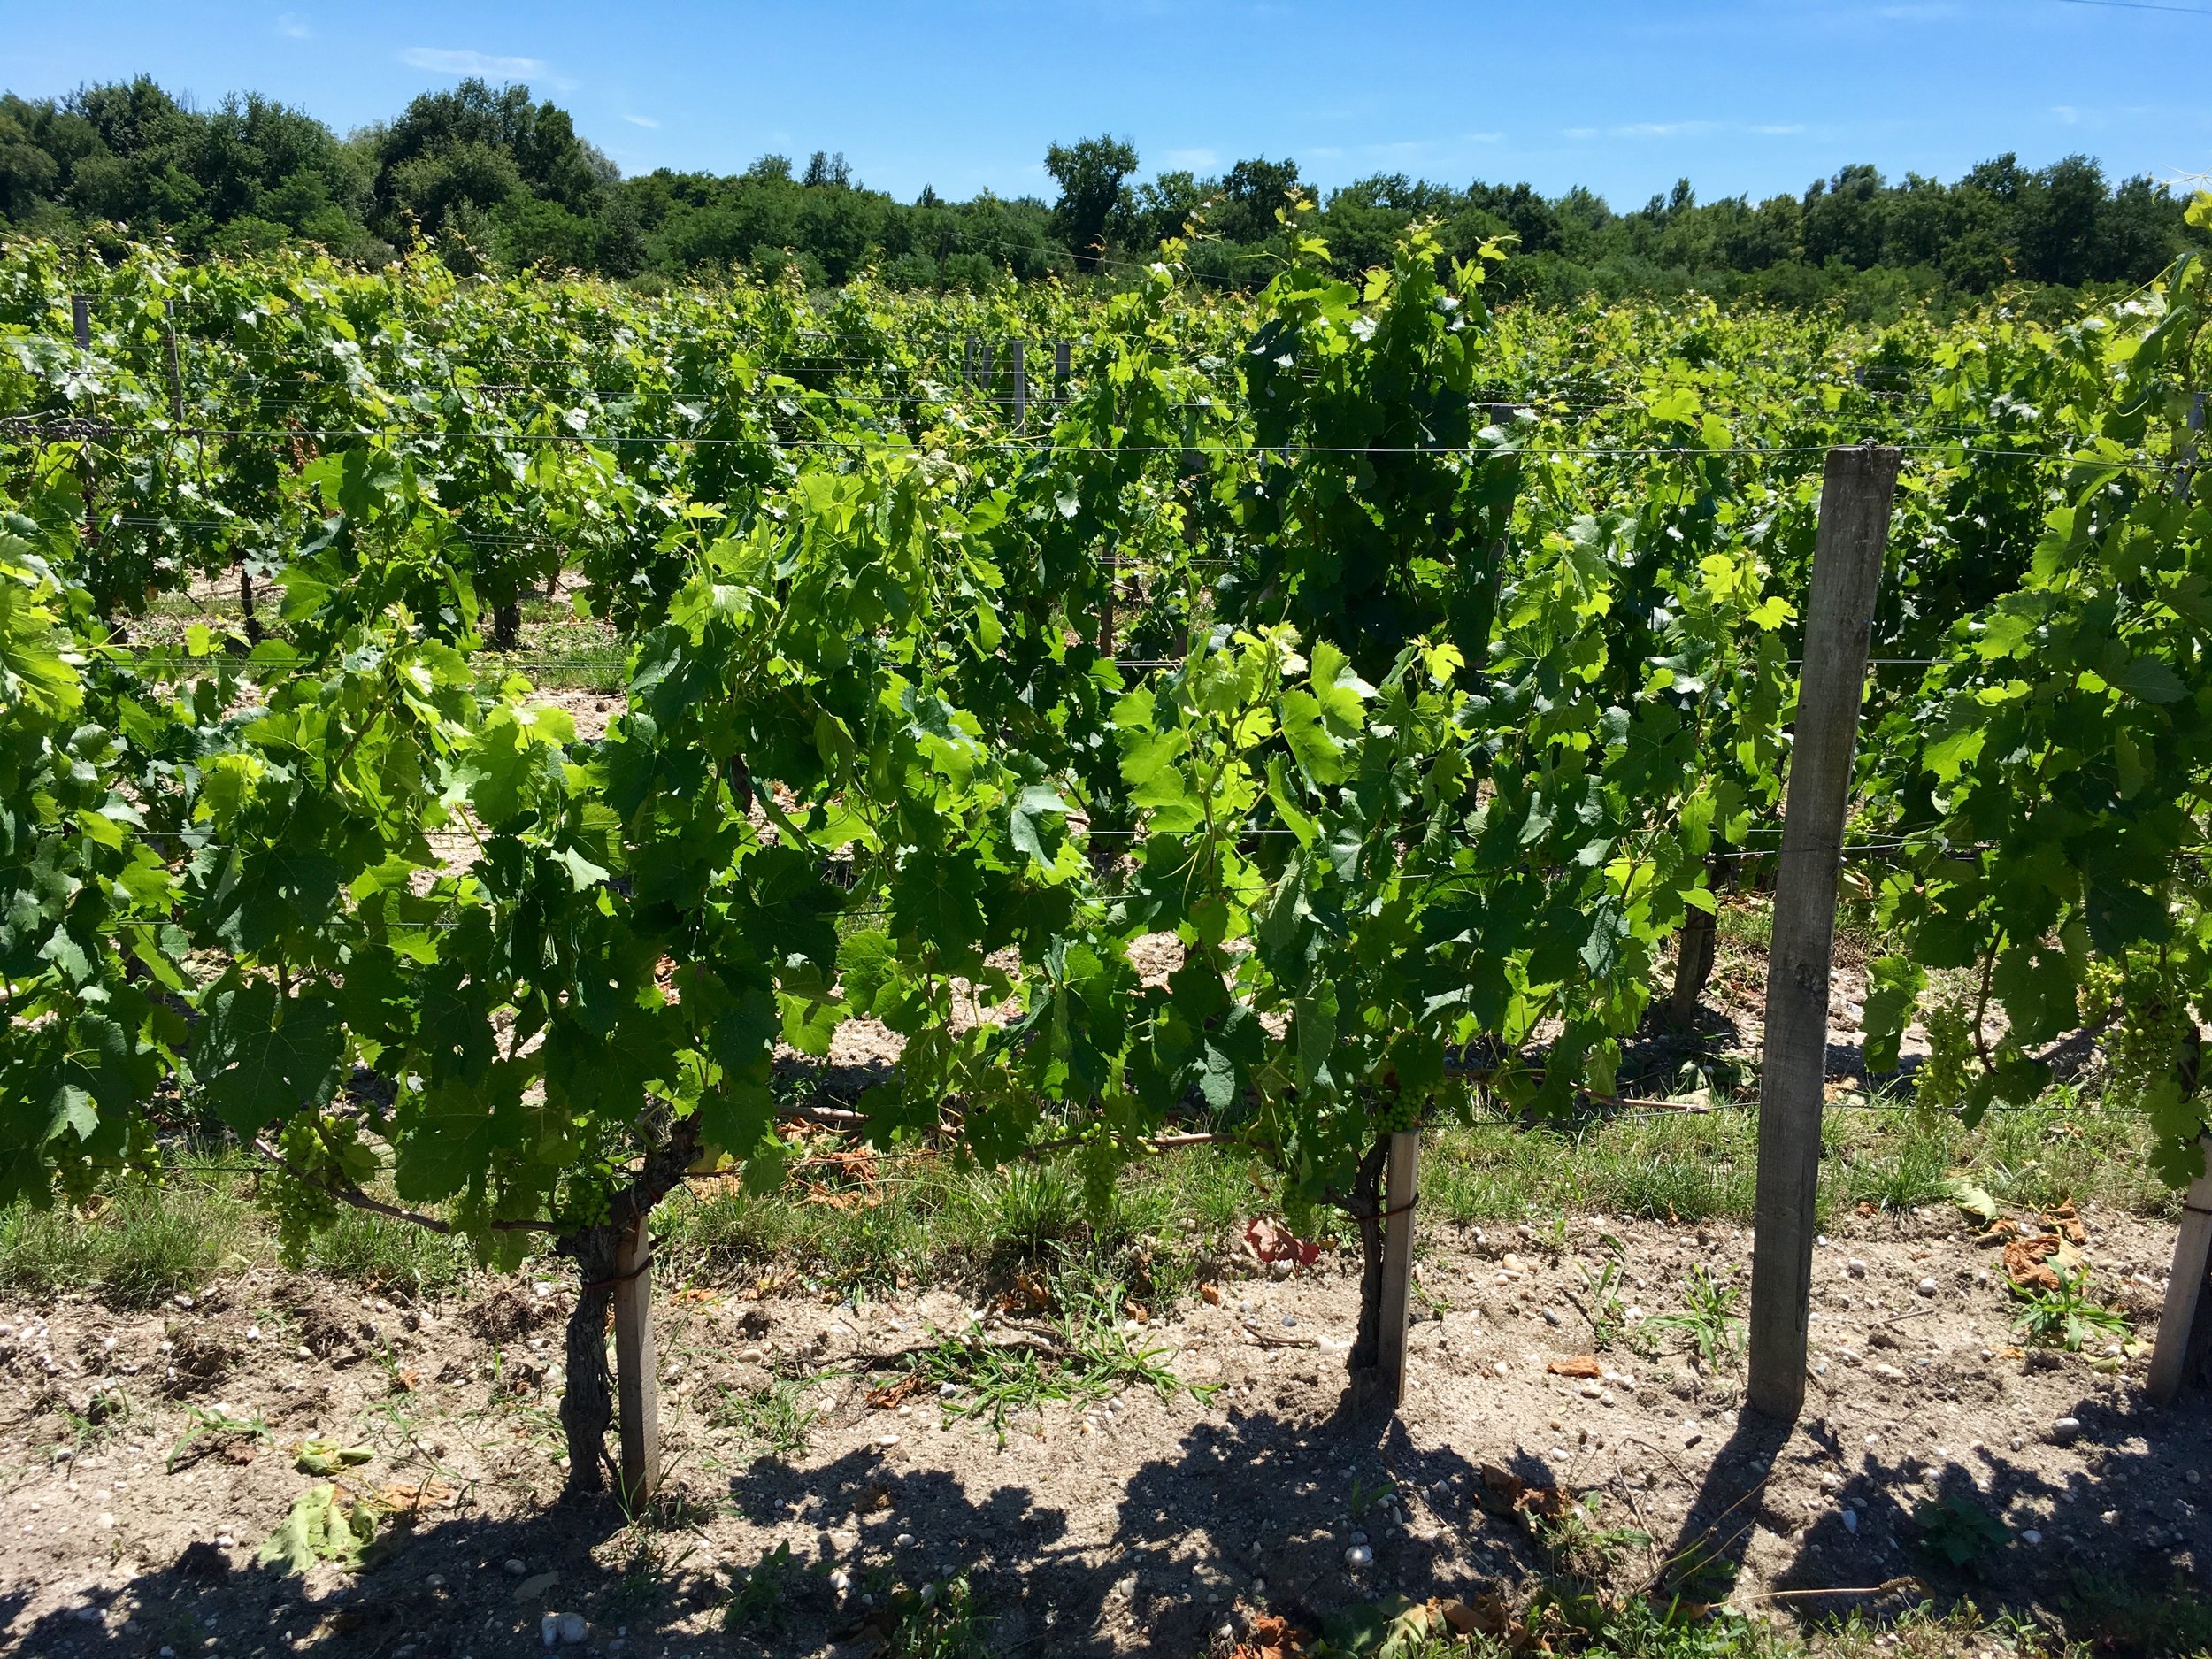 Beautiful vibrant vineyard